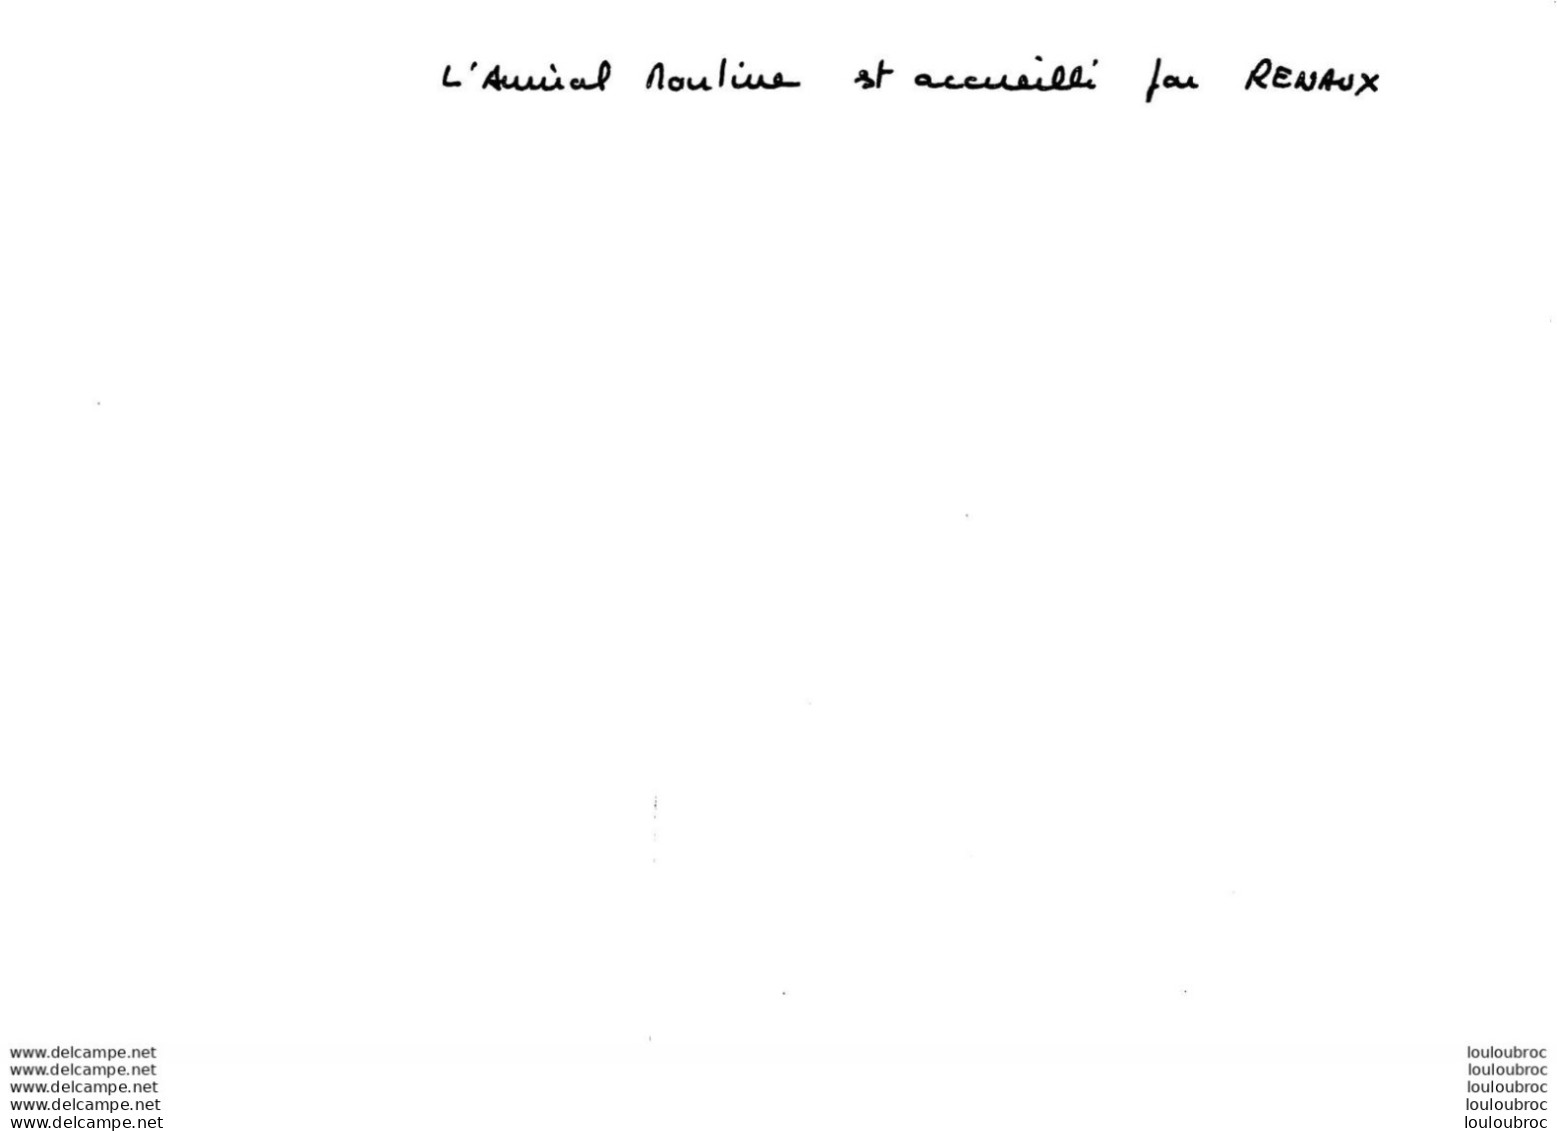 ESCORTEUR  LE BASQUE PASSATION DE COMMANDEMENT 01/1977  DU CDT RENAUX AU CDT DE ANDOLENKO  PRESENCE DE L'AMIRAL MOULINE - Bateaux